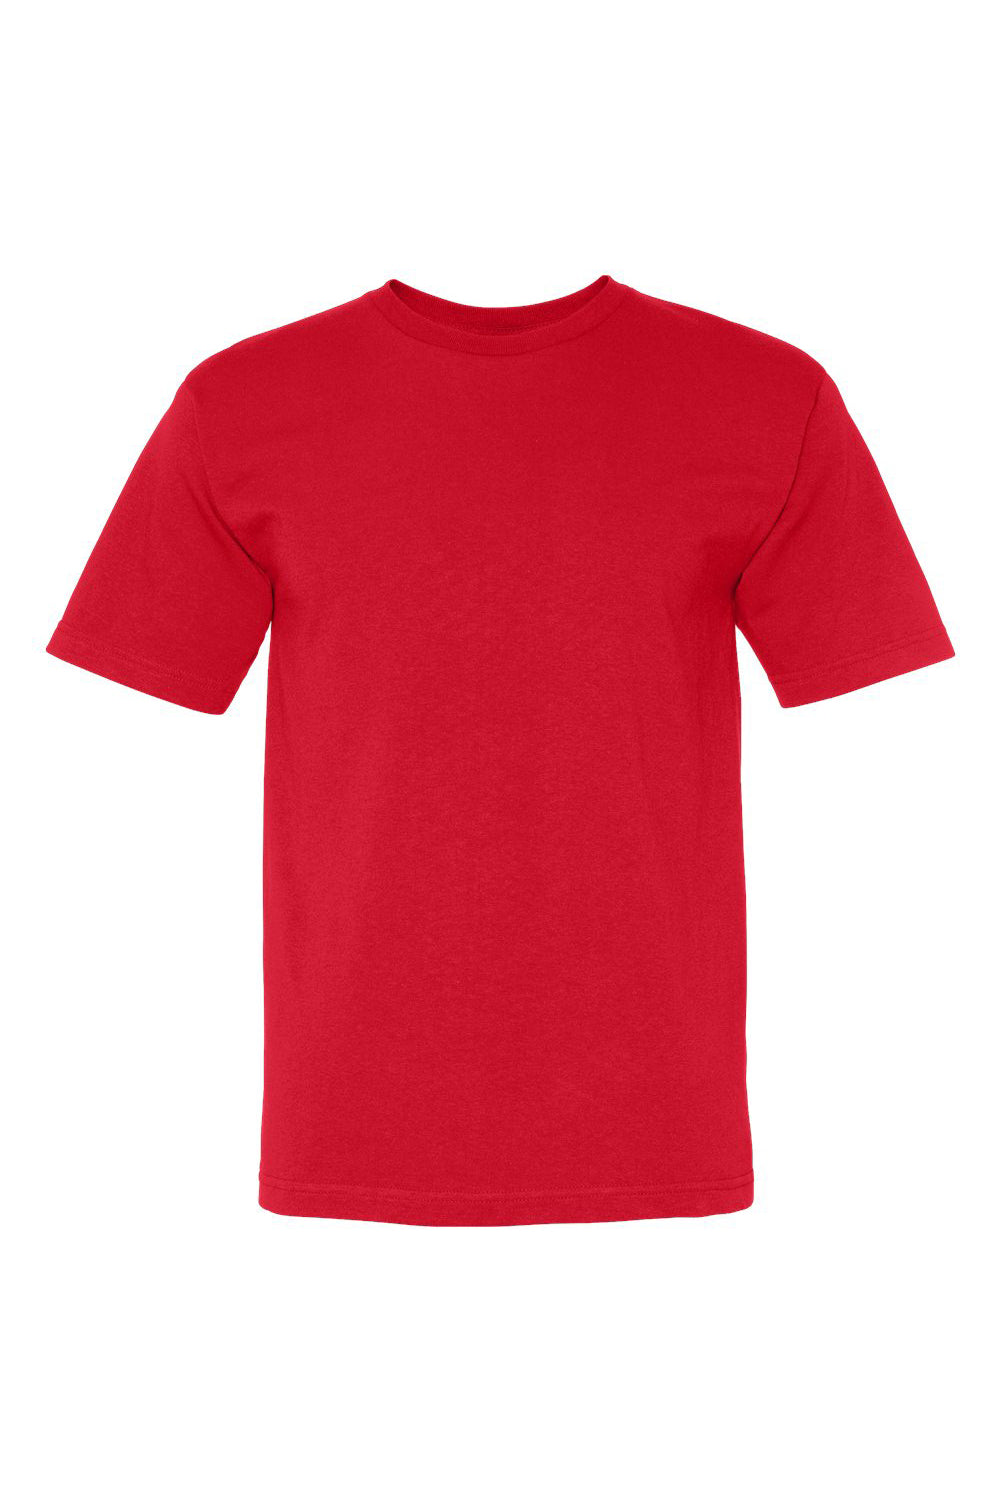 Bayside BA5040 Mens USA Made Short Sleeve Crewneck T-Shirt Cardinal Red Flat Front